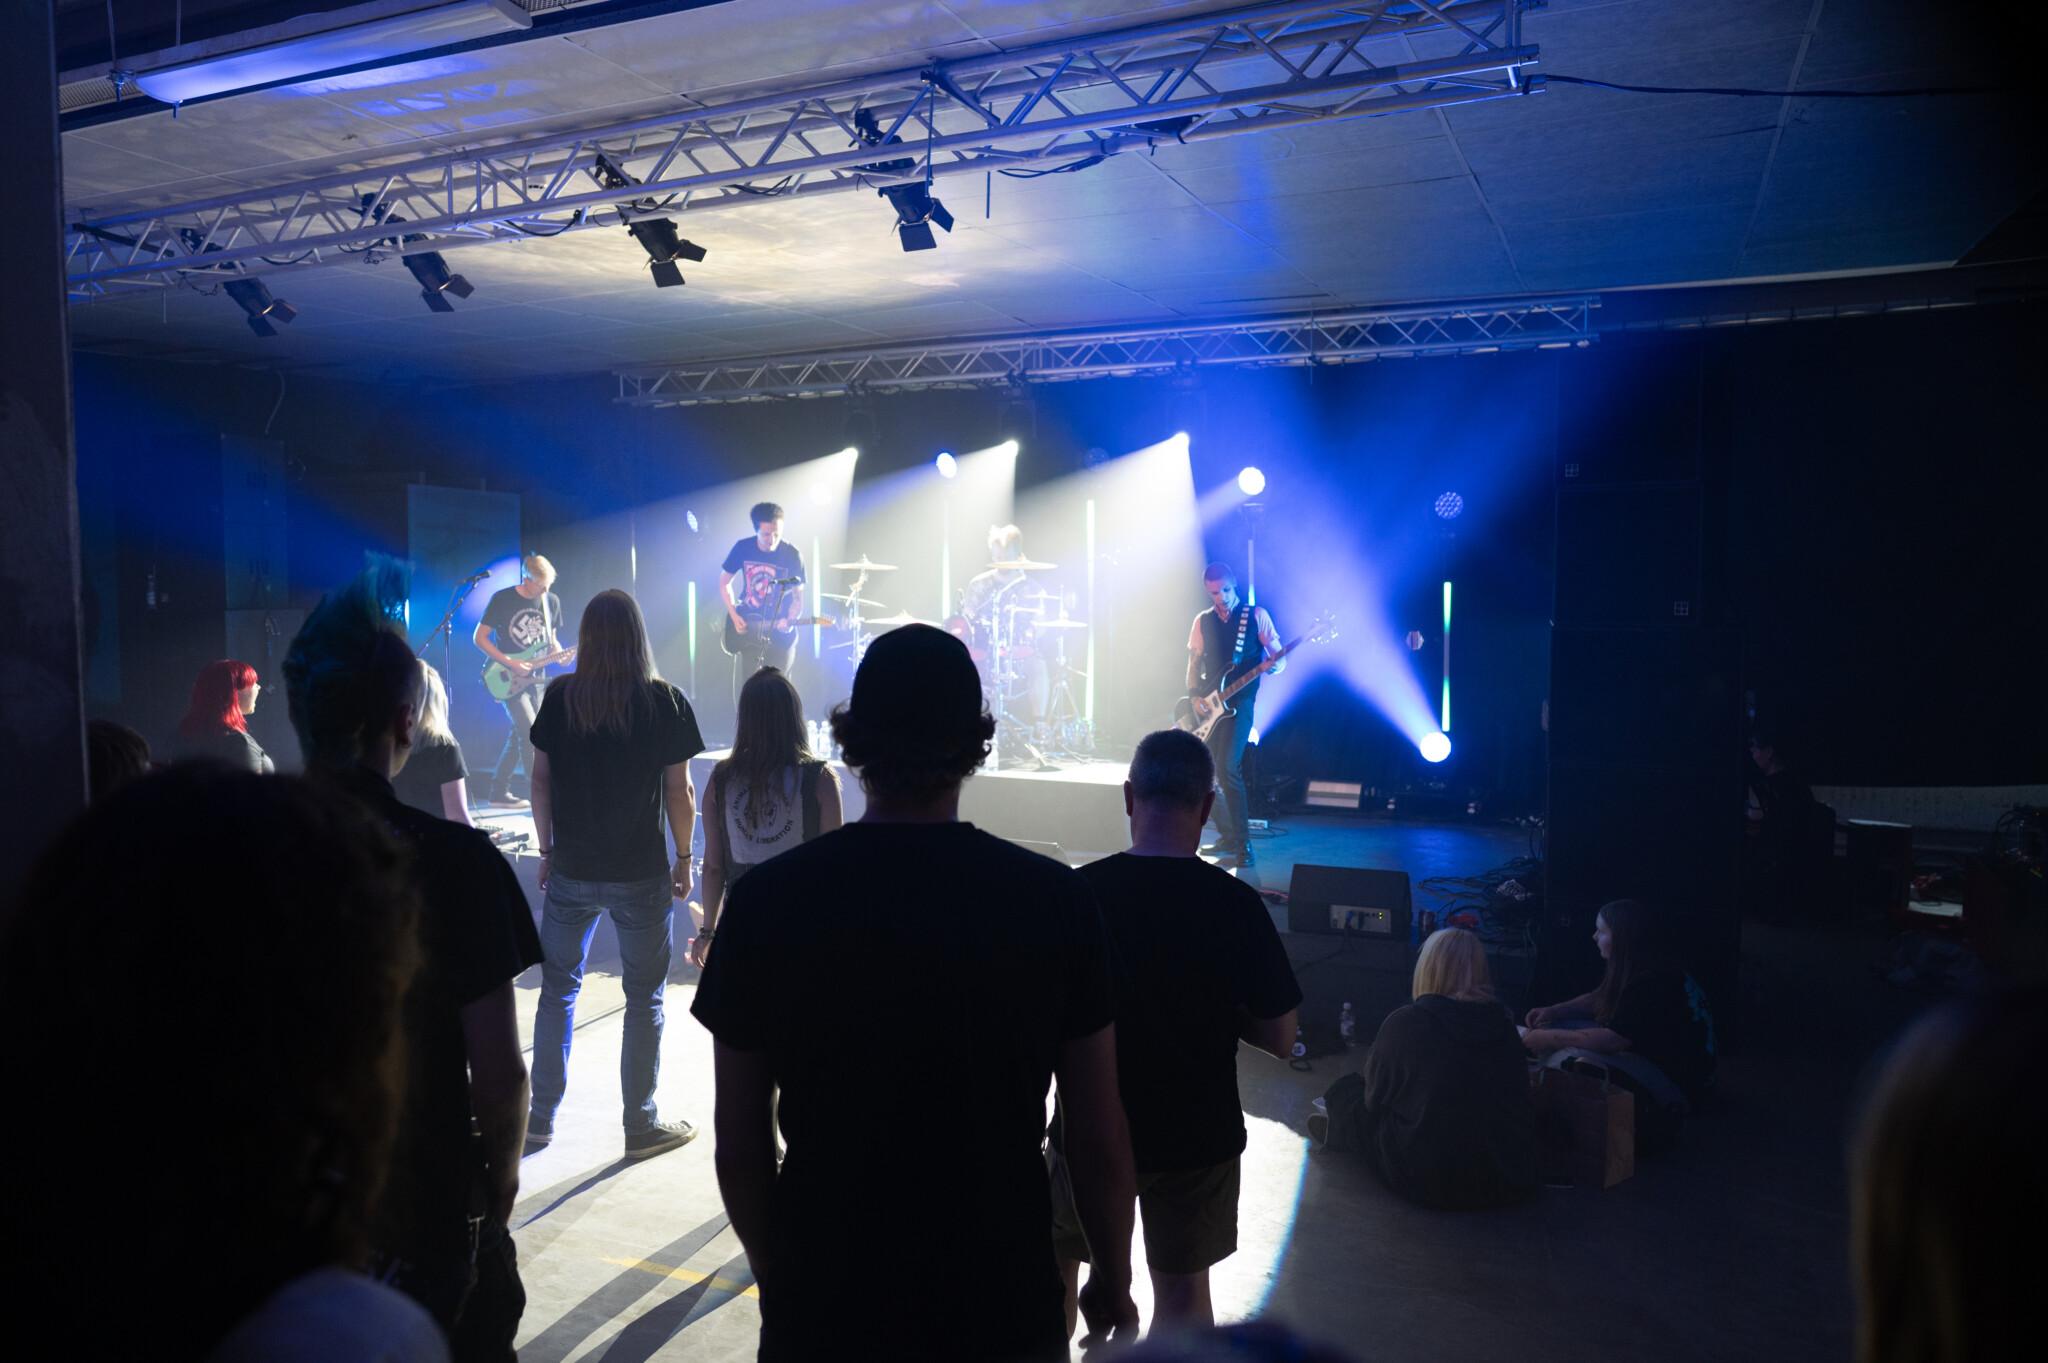 Rokkiklubimainen sisätila, yleisö seisoo lavan edessä, lavalla rokkibändi soittaa.